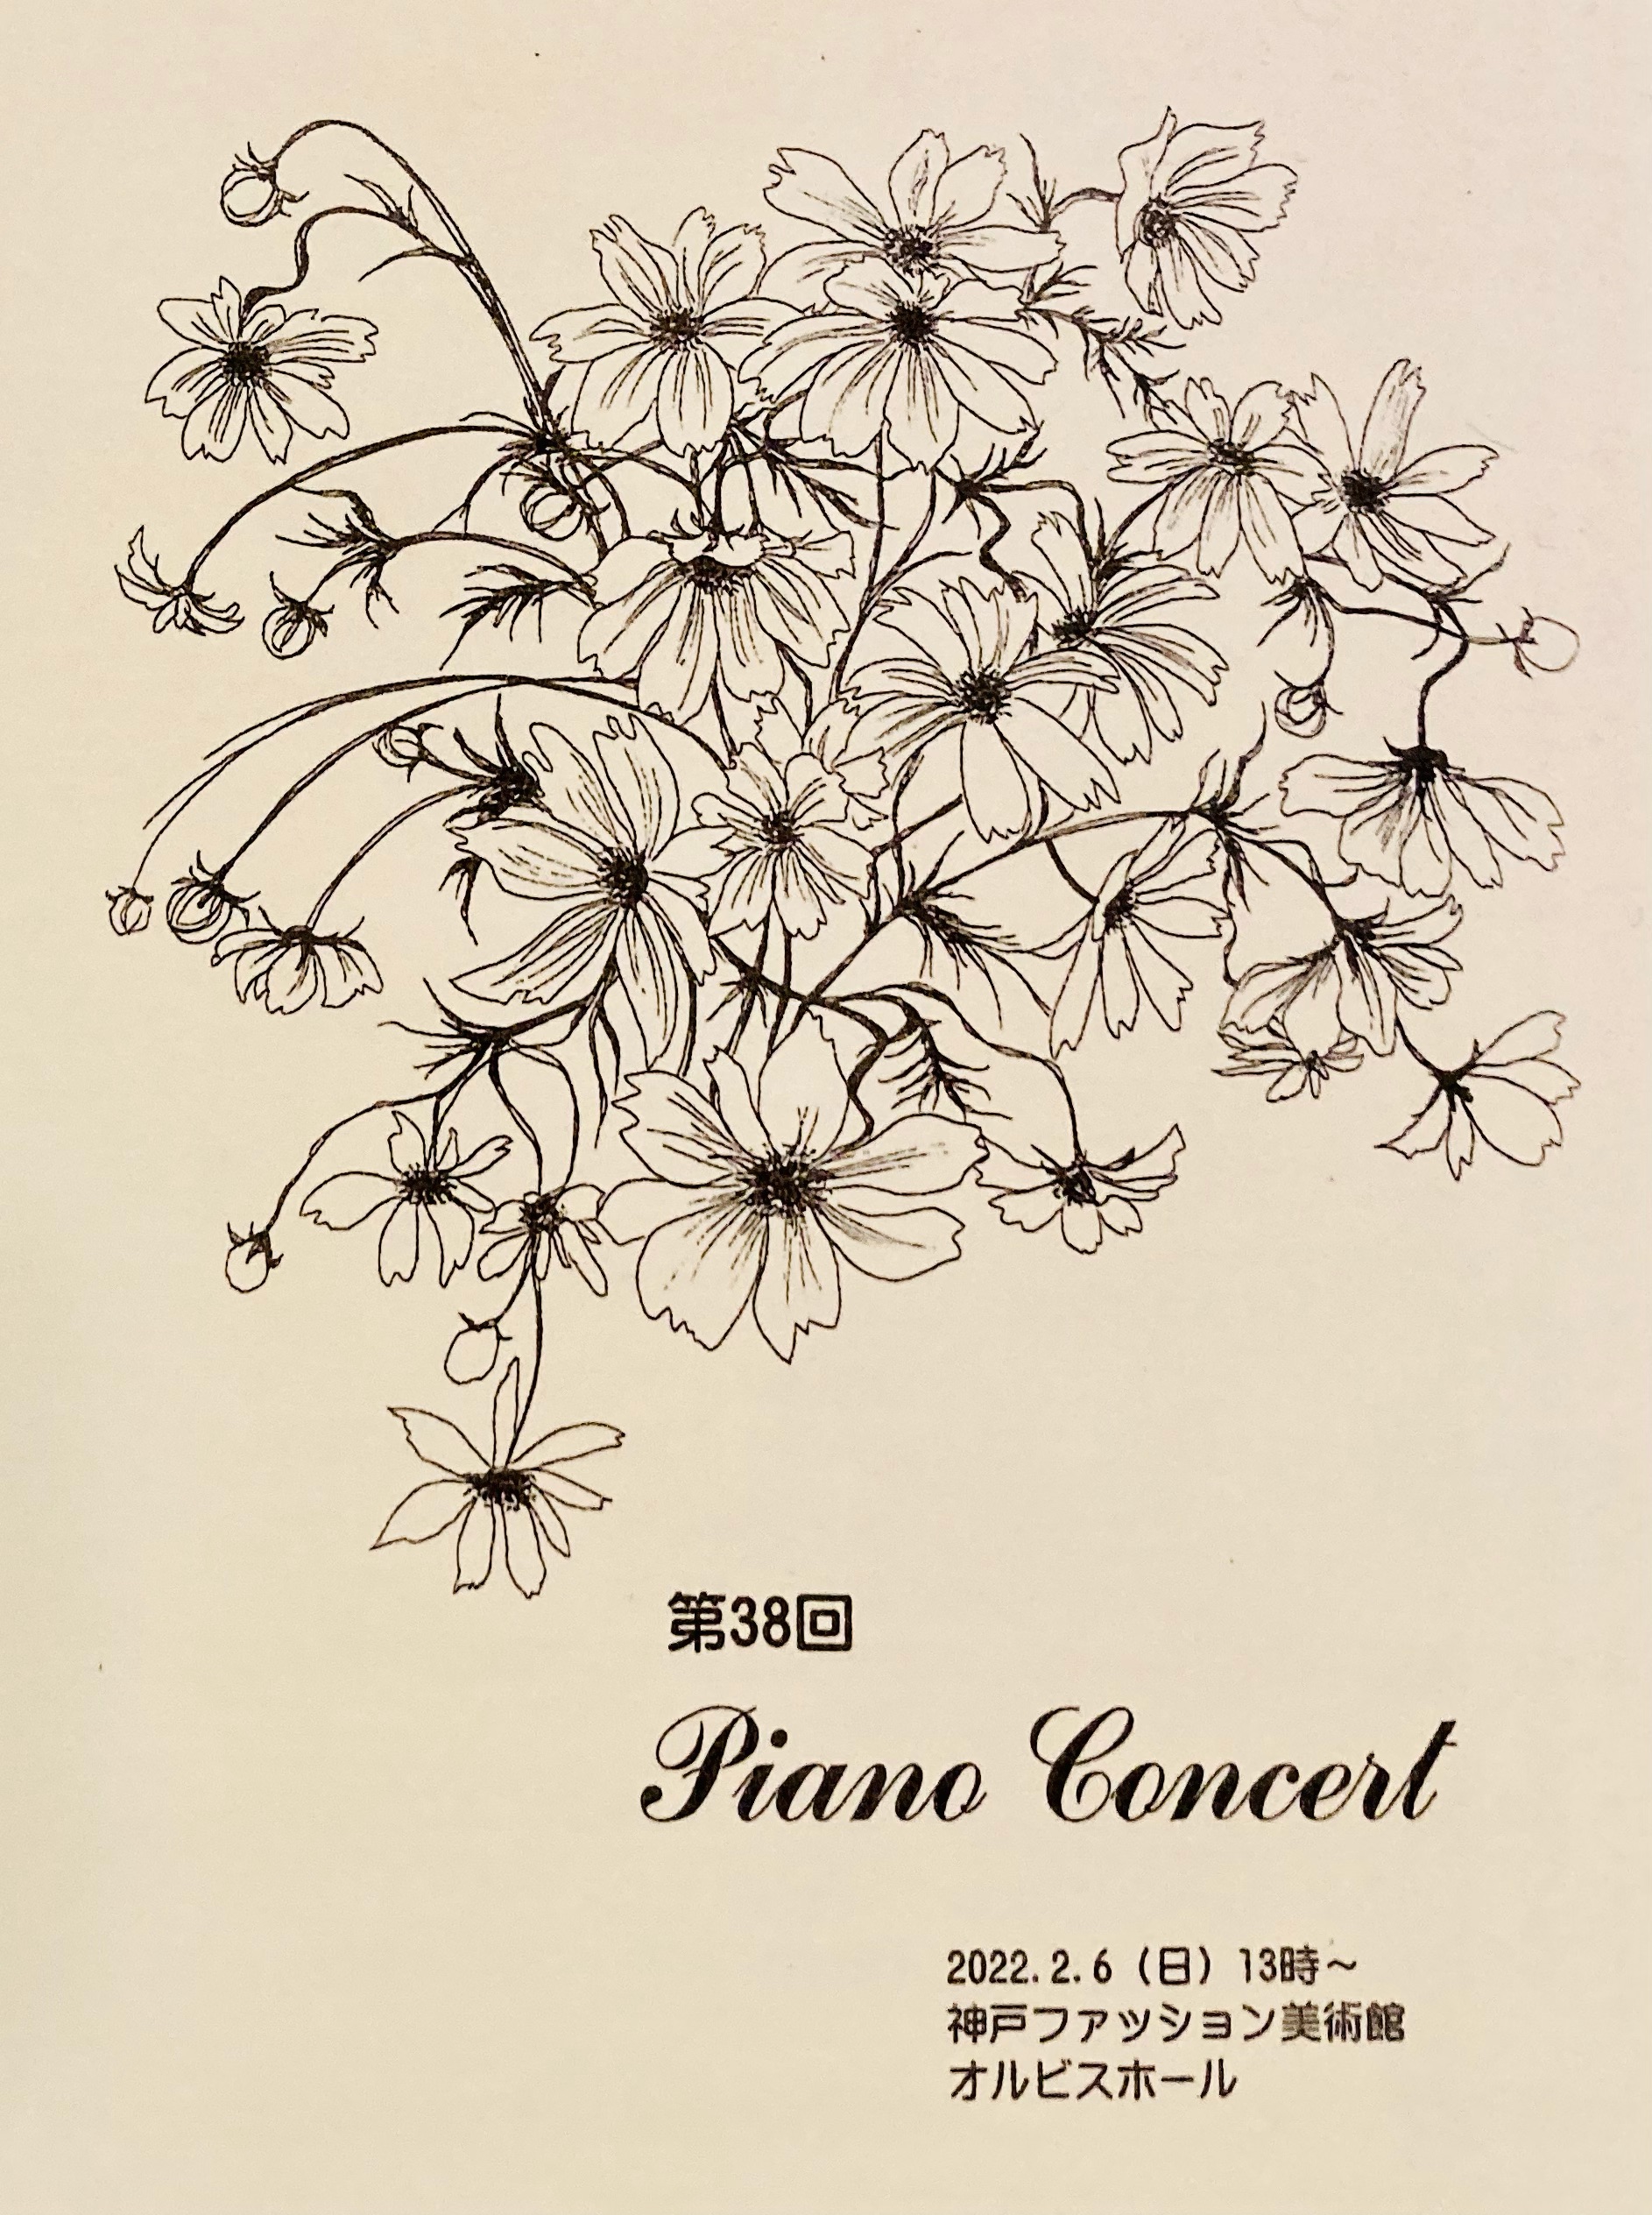 【オルビスホール情報】2/6(日) 「第38回 Piano Concert」開催！